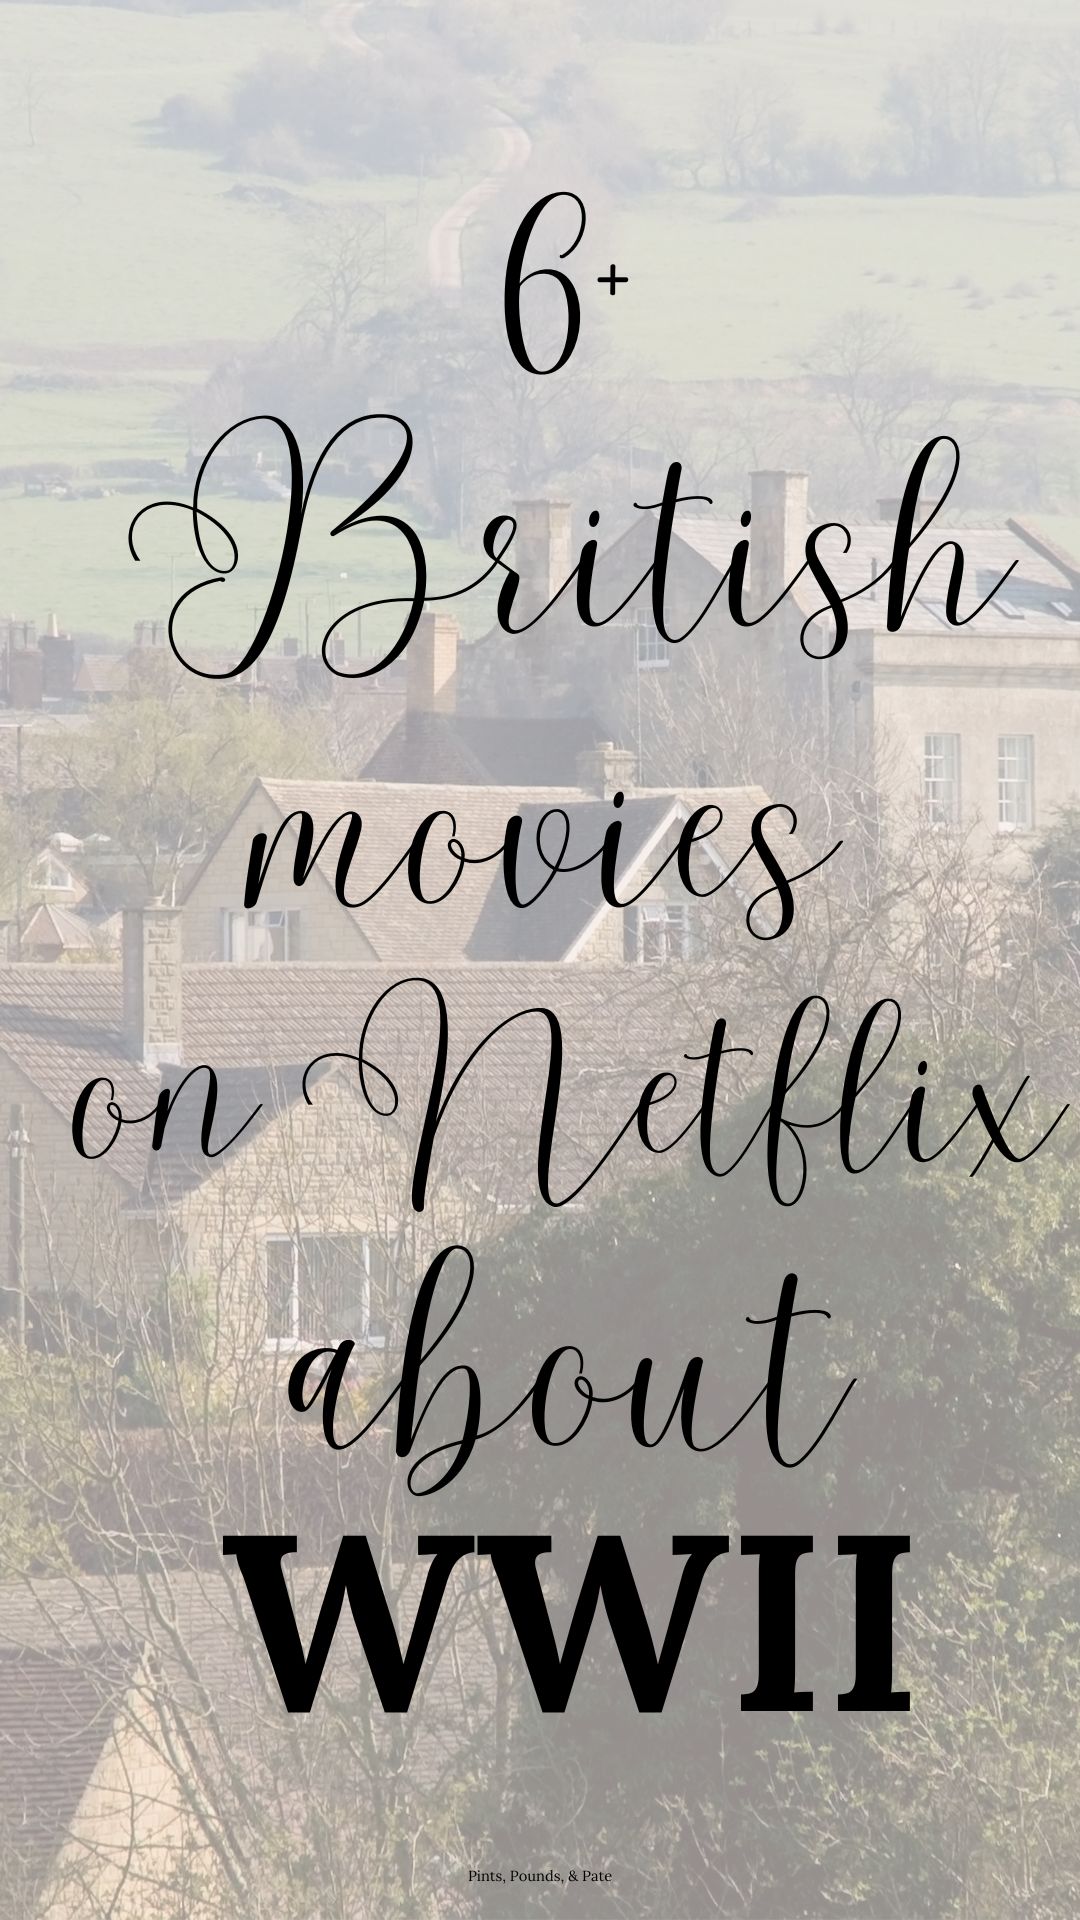 Best British Movies Netflix WWII